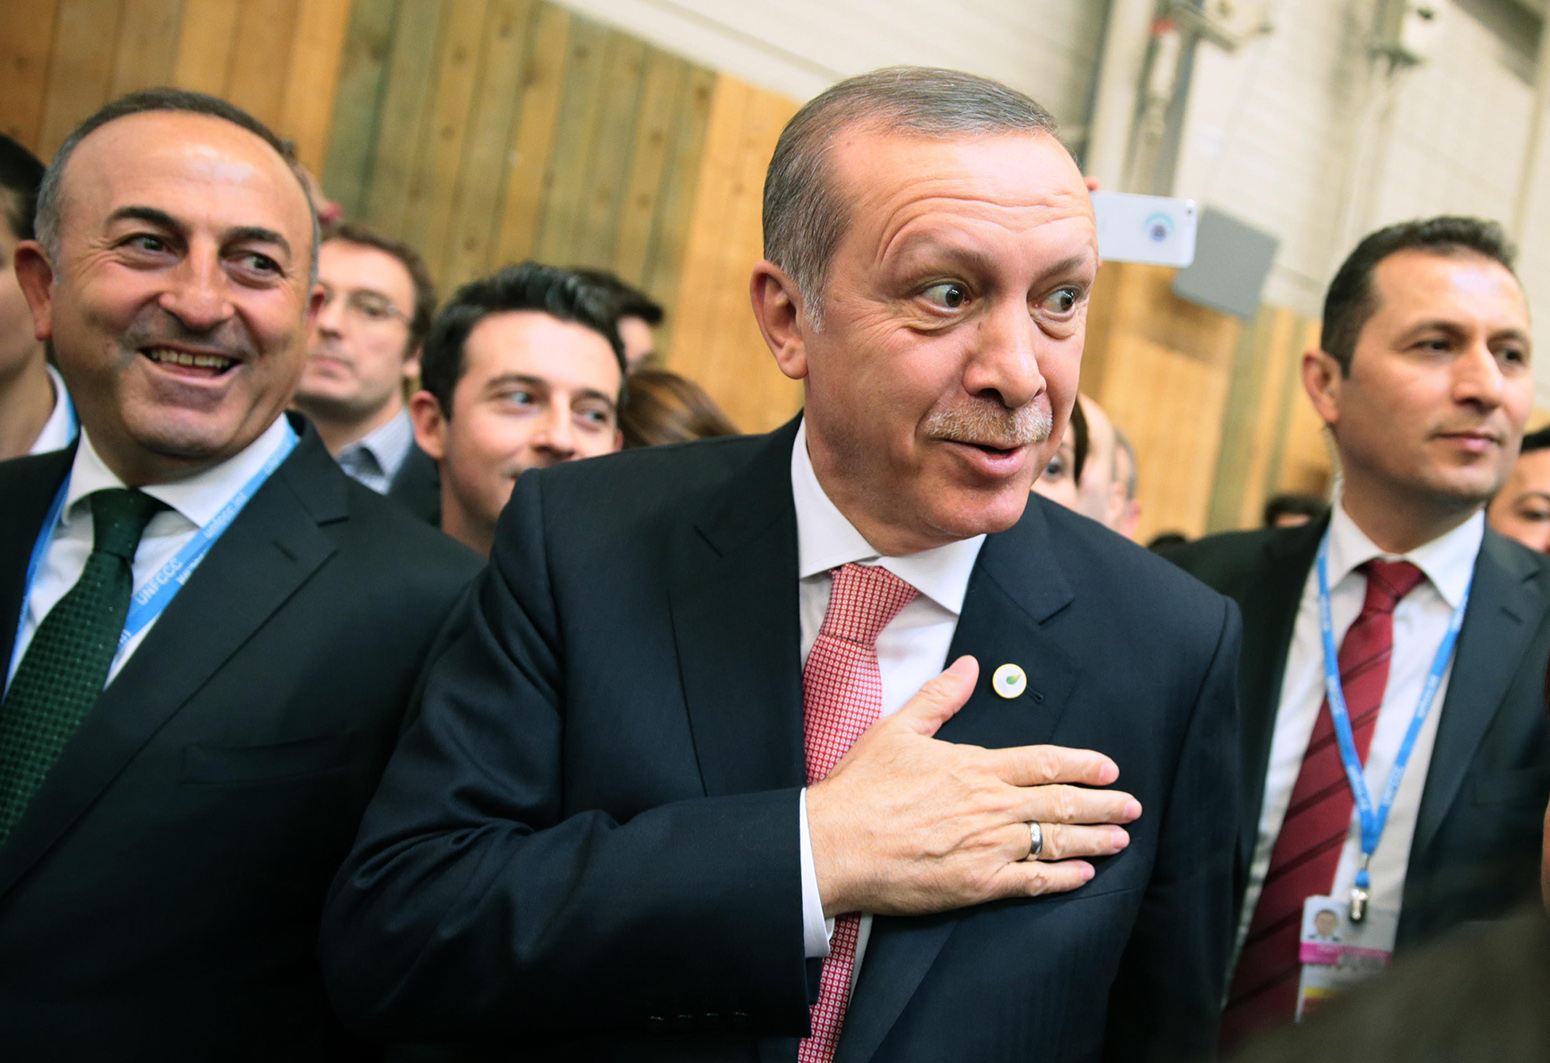 F7F884法国布尔热，2015年11月30日。土耳其总统雷杰普·塔伊普·埃尔多安(中)出席在巴黎附近布尔热举行的2015年联合国气候变化会议(COP21)。资料来源:米哈伊尔·梅泽尔/塔斯社/阿拉米直播新闻